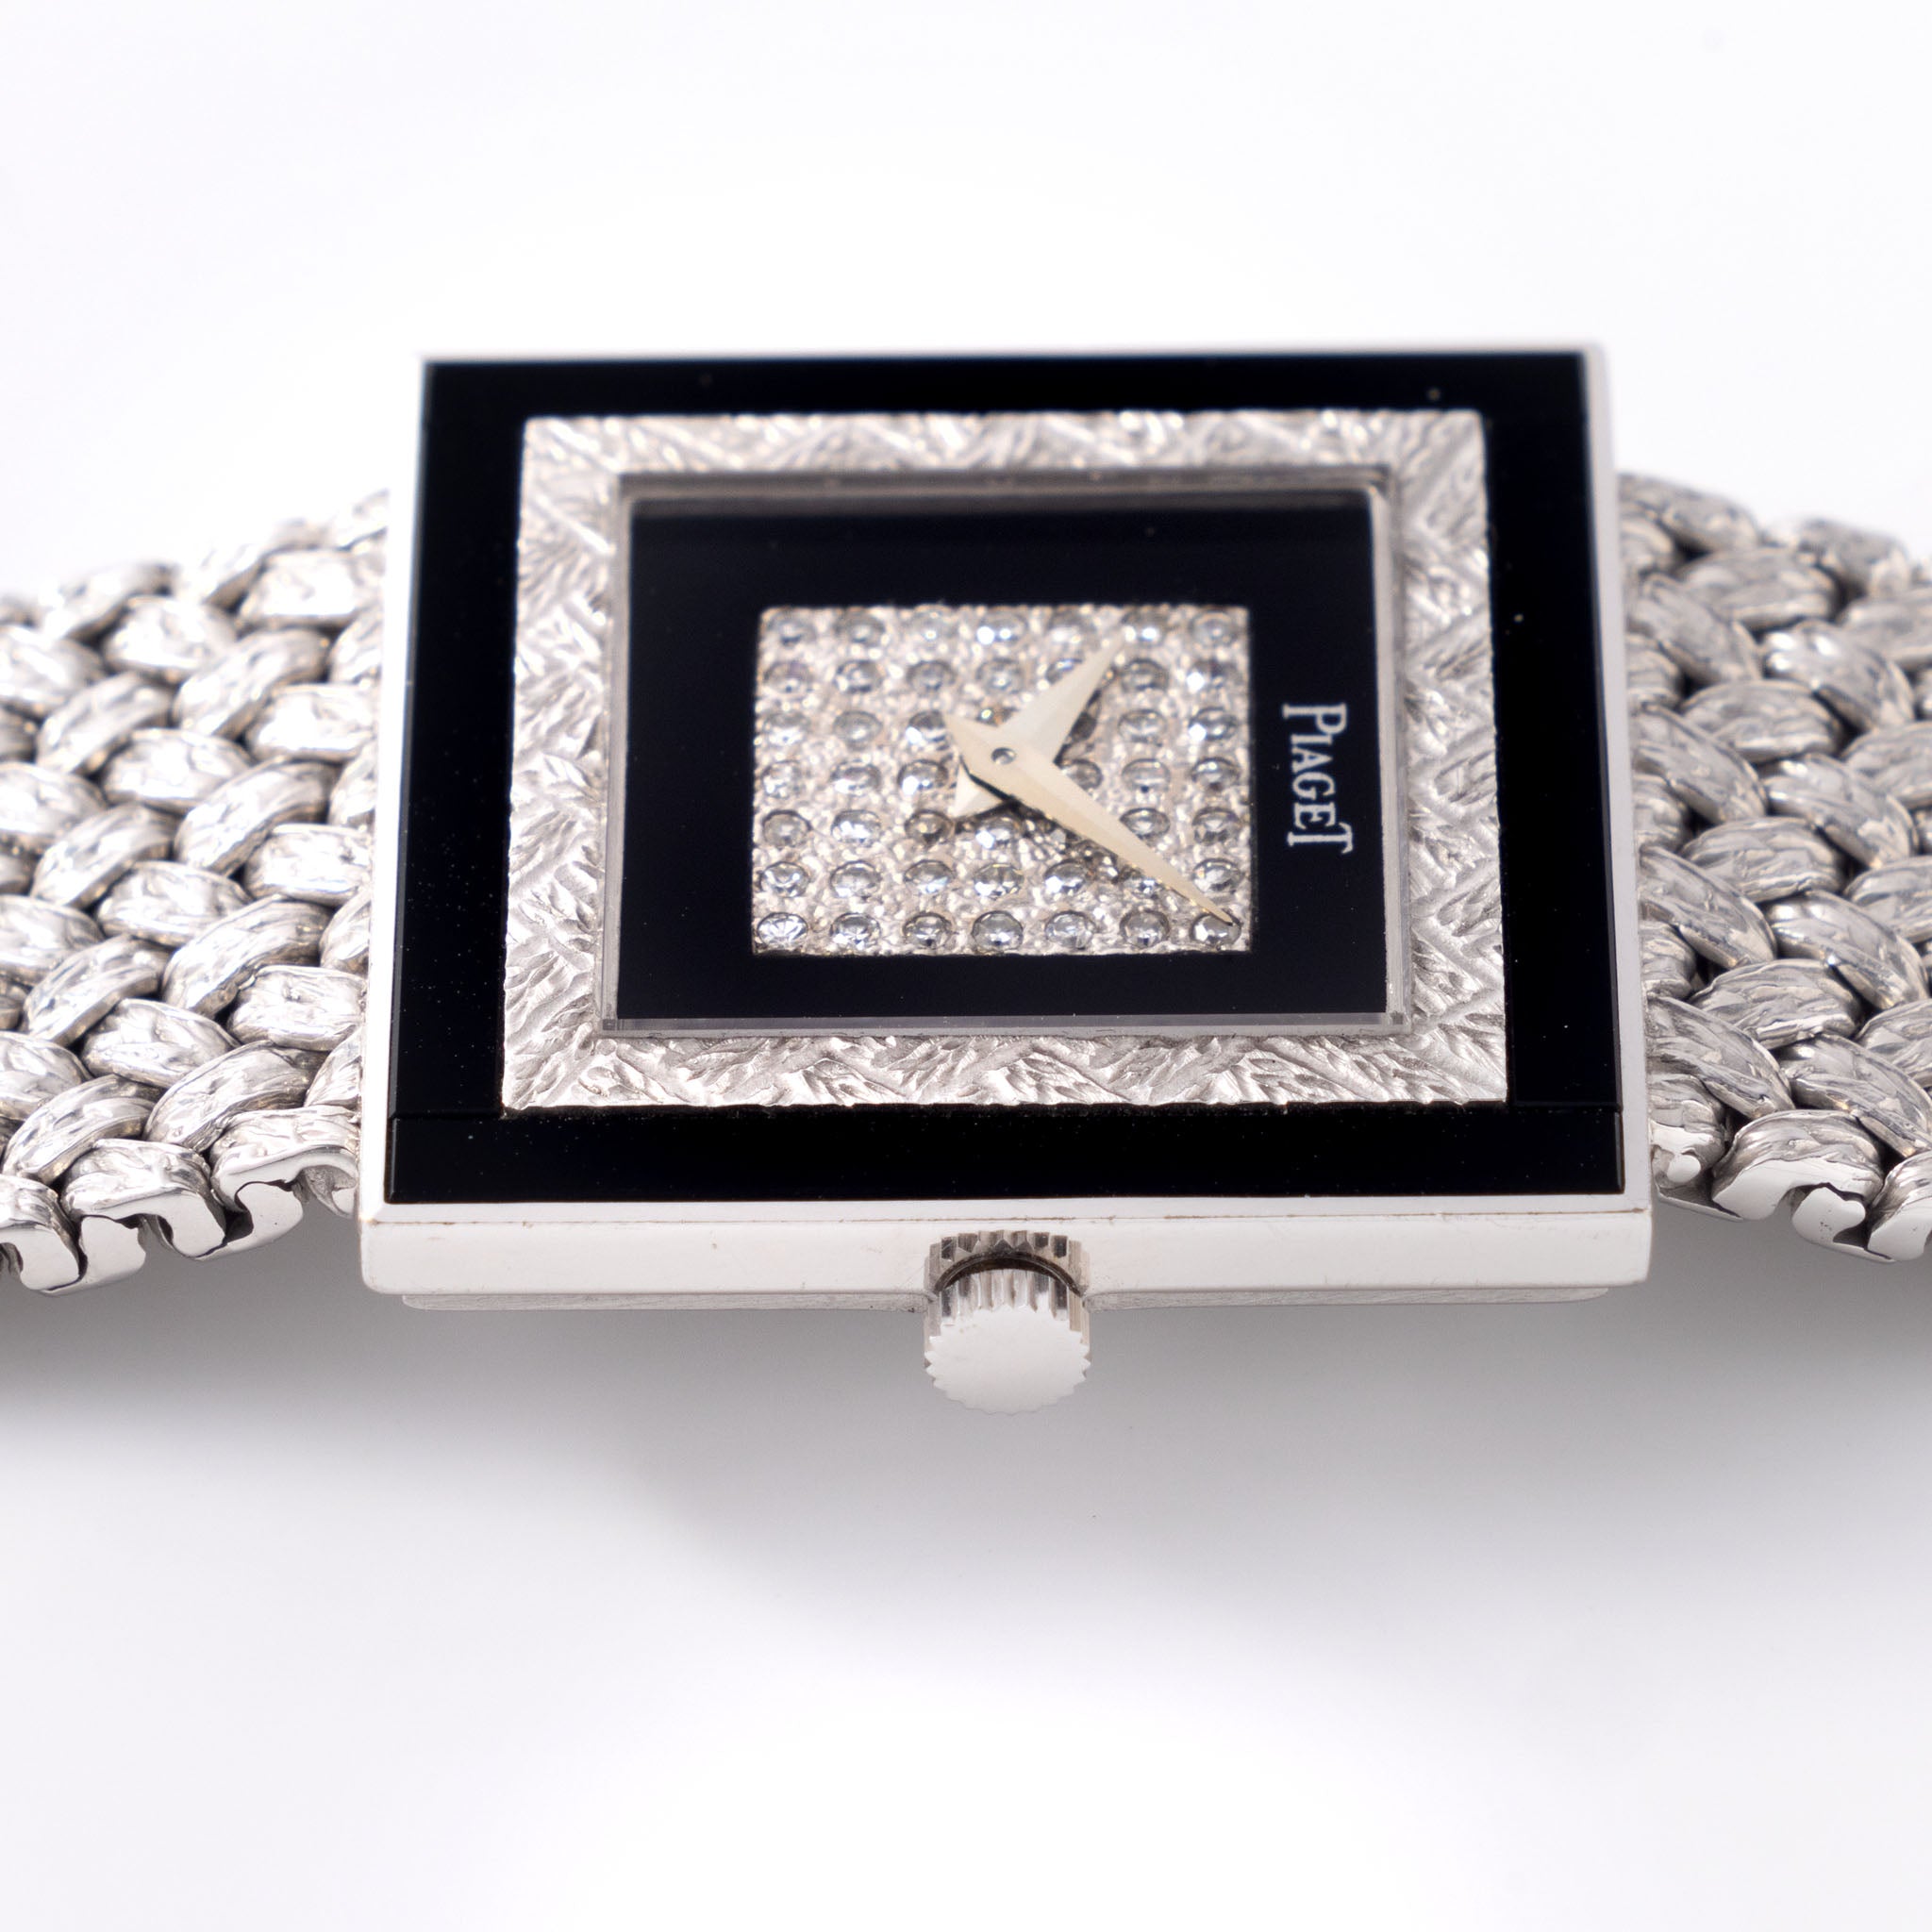 Piaget Altipiano Weiẞgold mit Diamanten und Onyx besetztem Zifferblatt mit Box und Papieren Referenz 9200